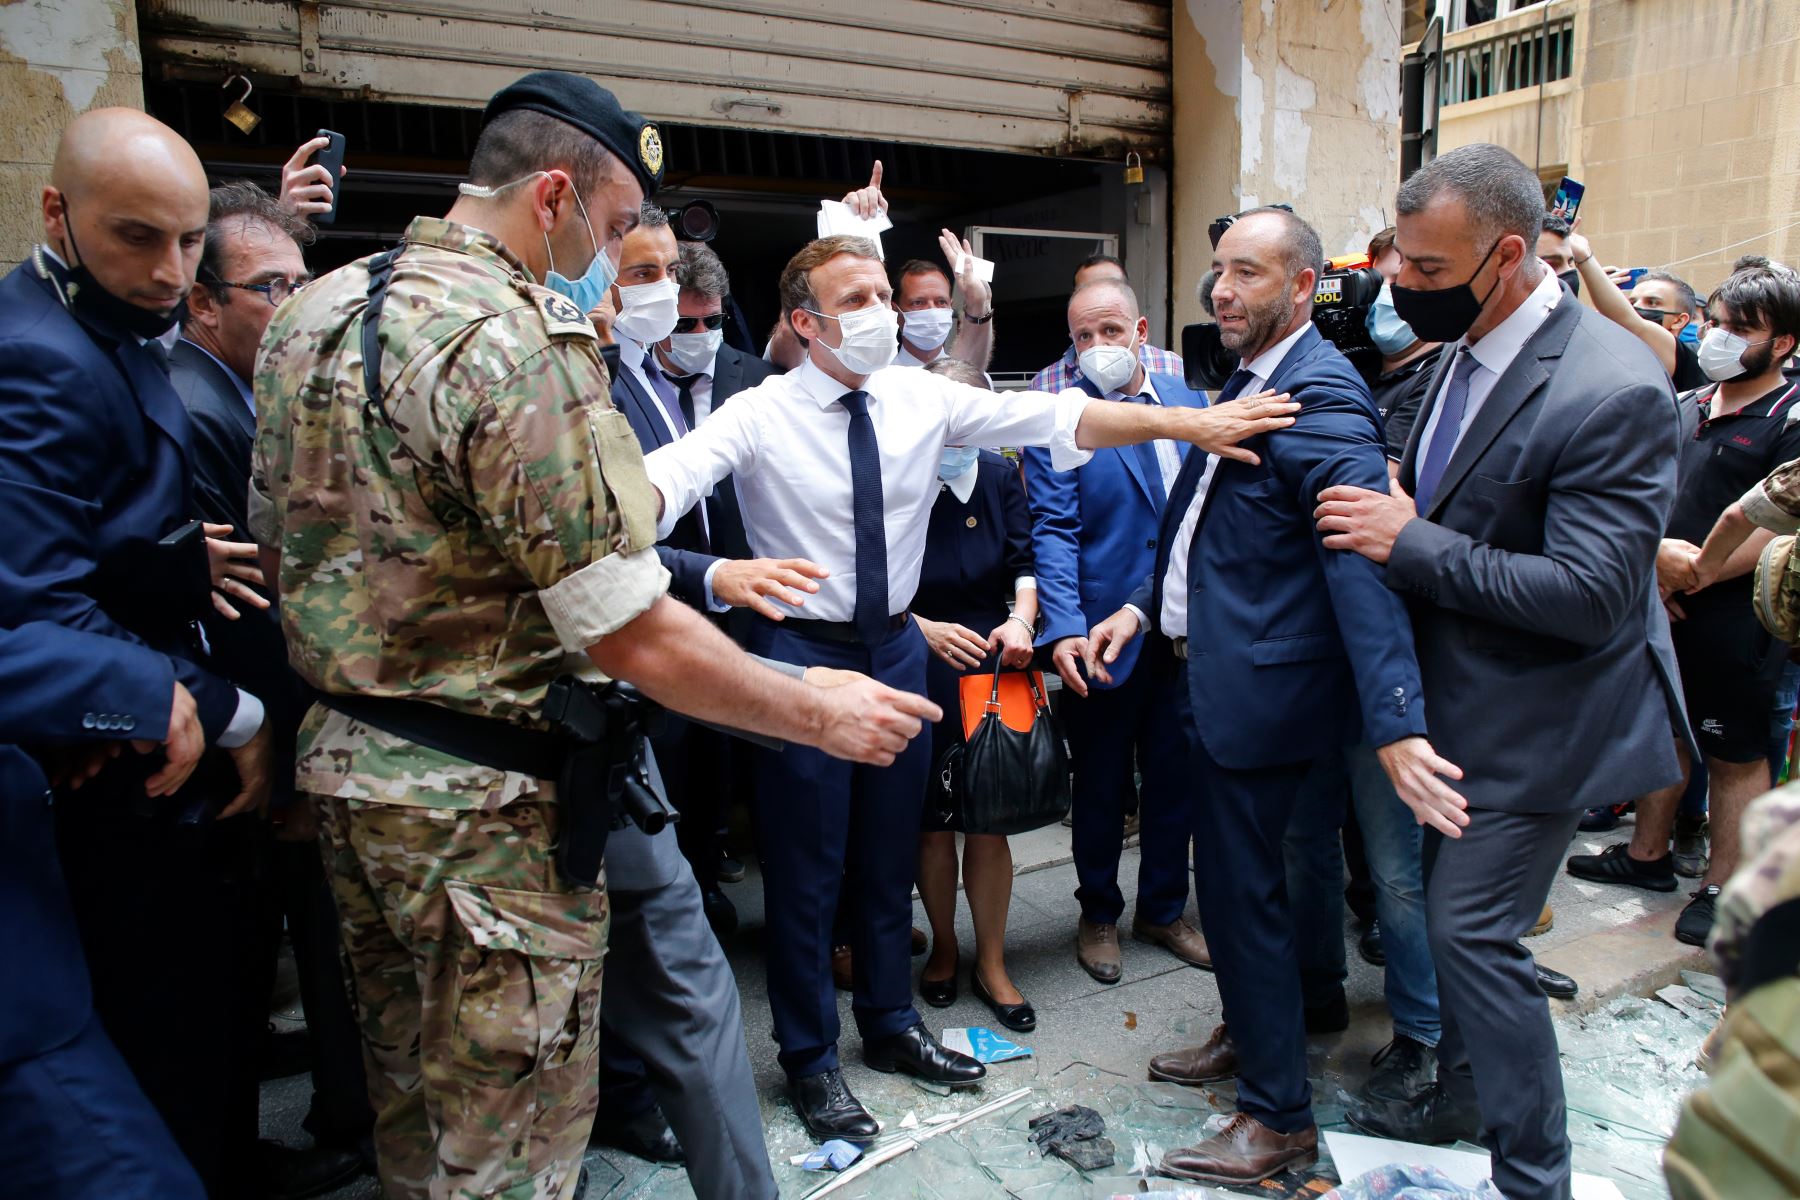 El presidente francés, Emmanuel Macron , gesticula mientras visita una calle devastada de Beirut, Líbano, dos días después de que una explosión masiva devastó la capital libanesa.
Foto: AFP